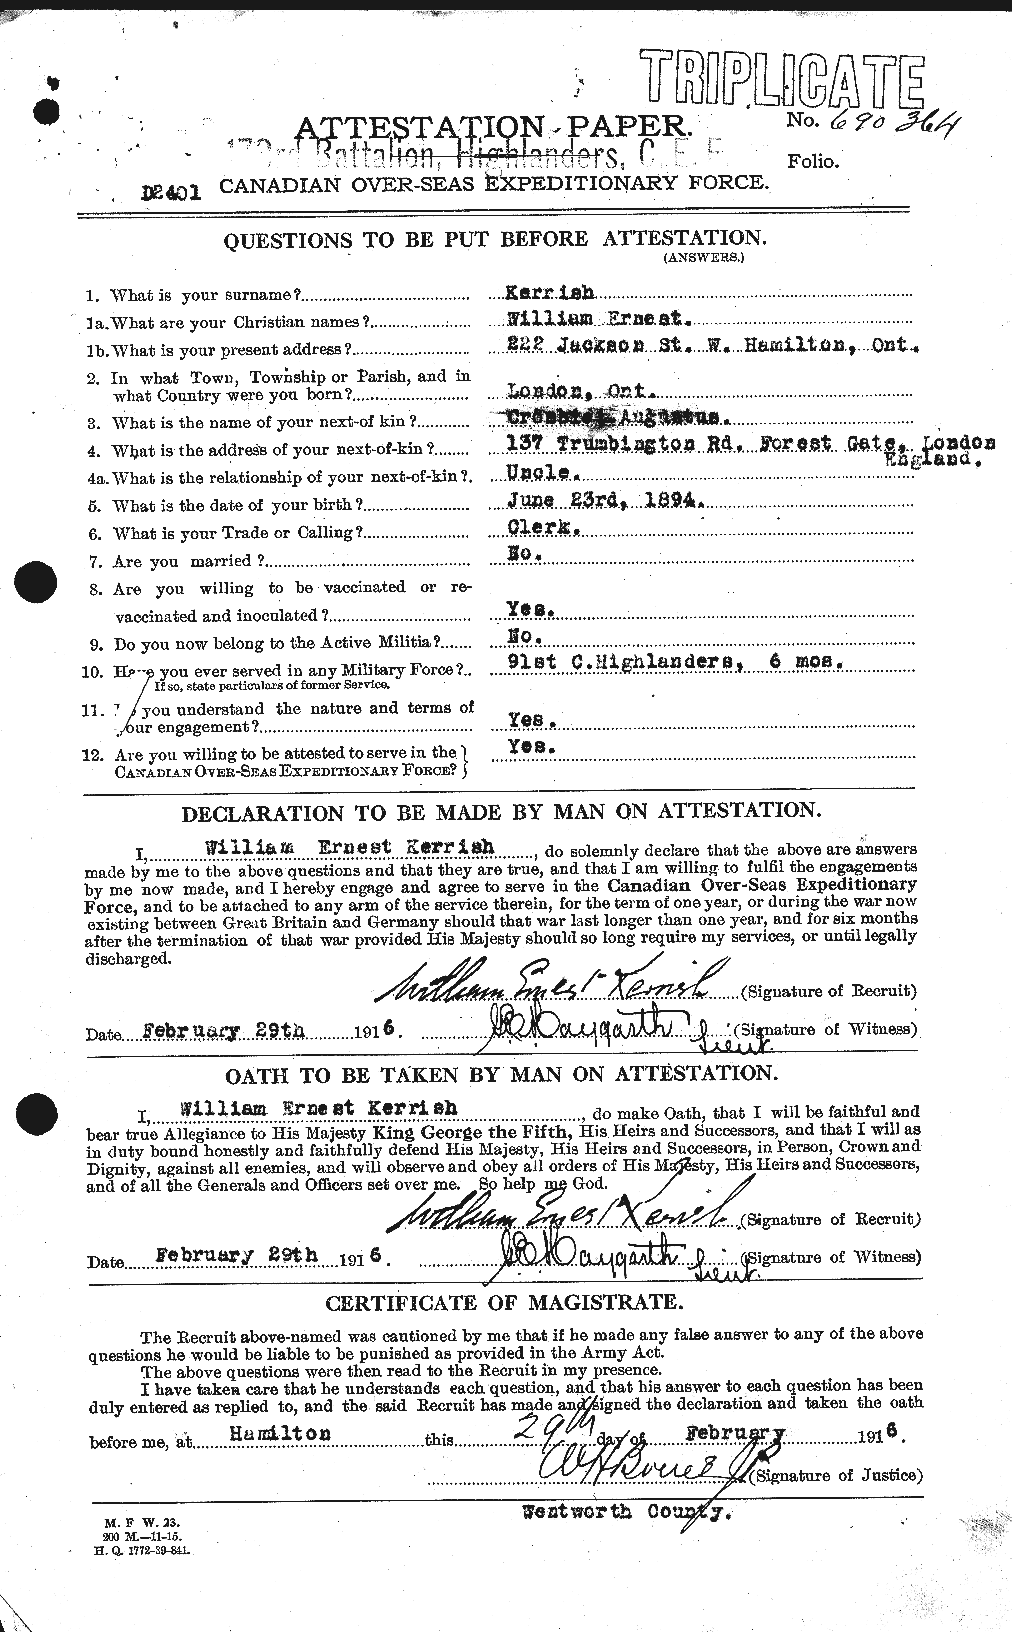 Dossiers du Personnel de la Première Guerre mondiale - CEC 431794a